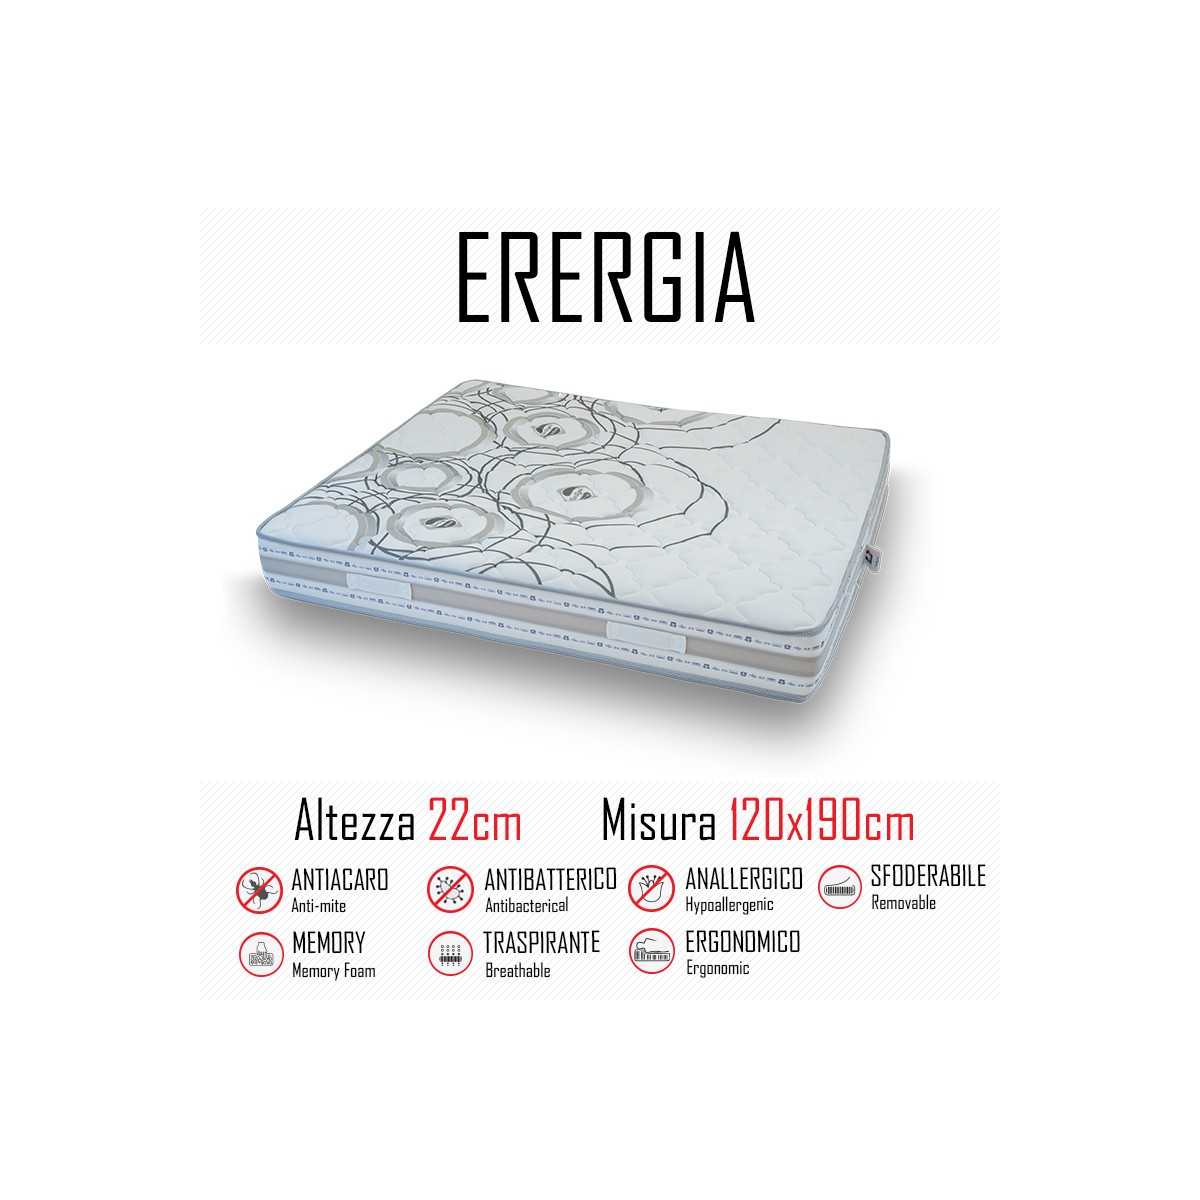 Materasso Energia 120x190 in gomma e memory alto 22cm